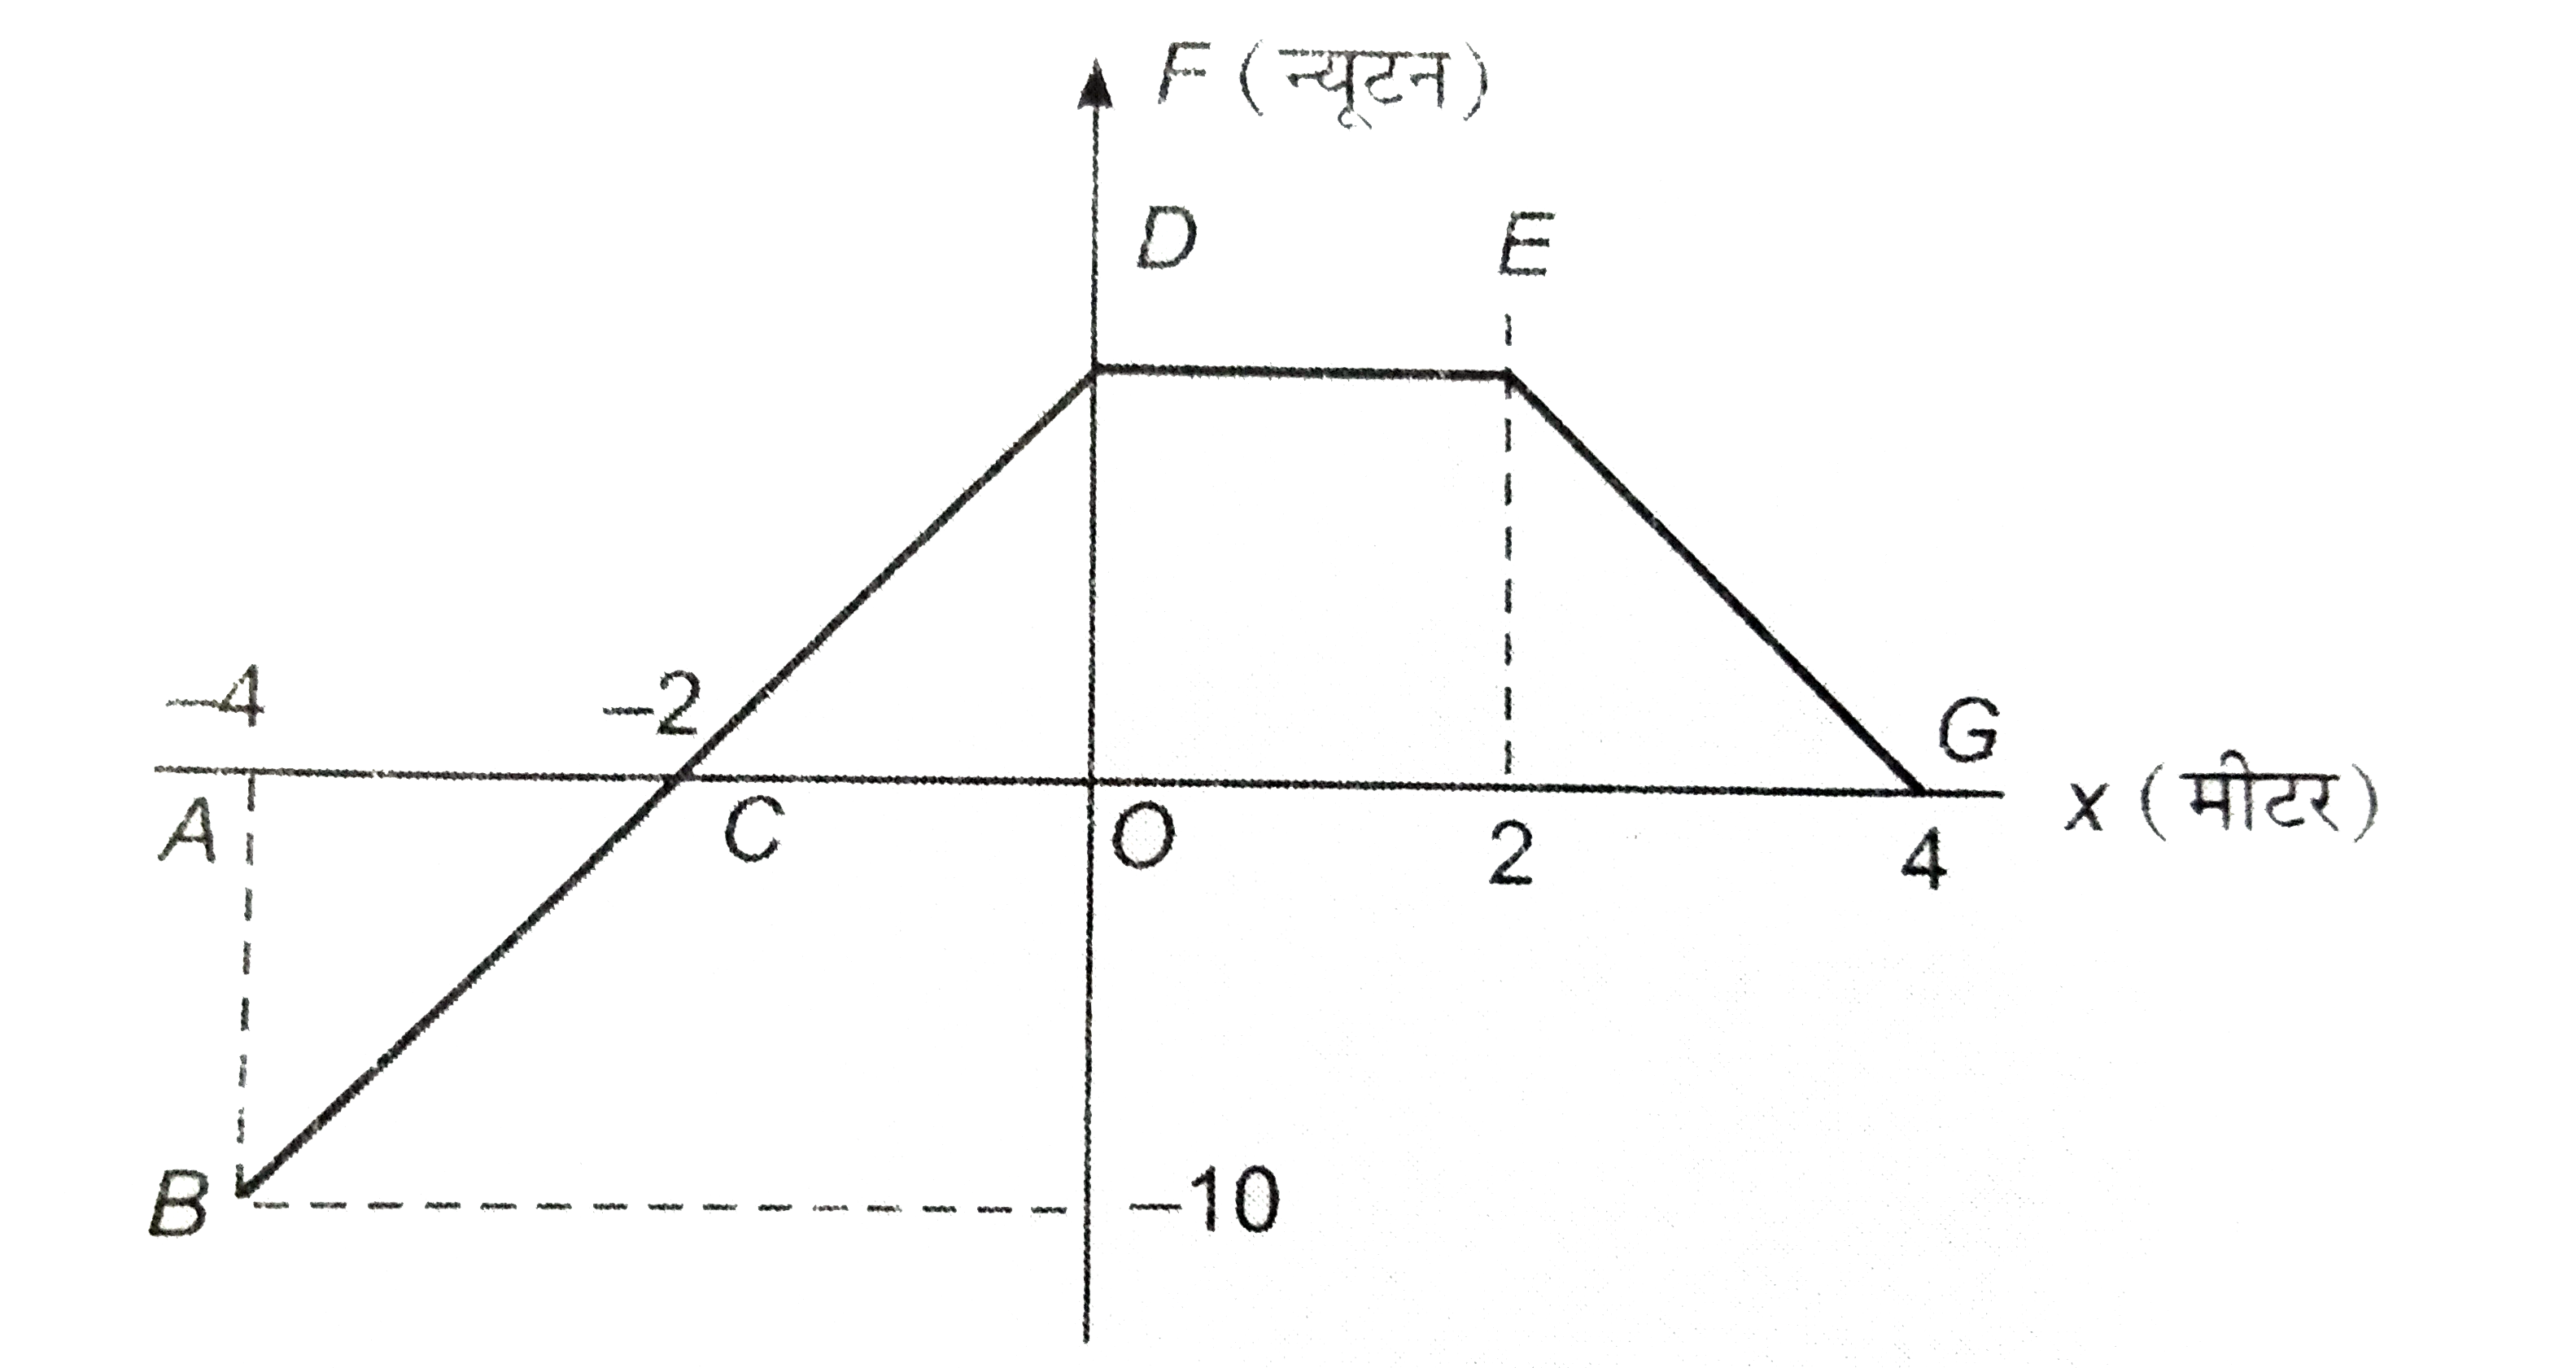 एक कण केपीआर कार्यरत परिवर्तित बल F का मकान विस्थापन x के साथ चित्र ३३ के अनुसार बदलता है।      x=-4 मीटर से x=+4 मीटर तक विस्थापन में बल द्वारा किये गये कार्य कि गणना कीजिये।